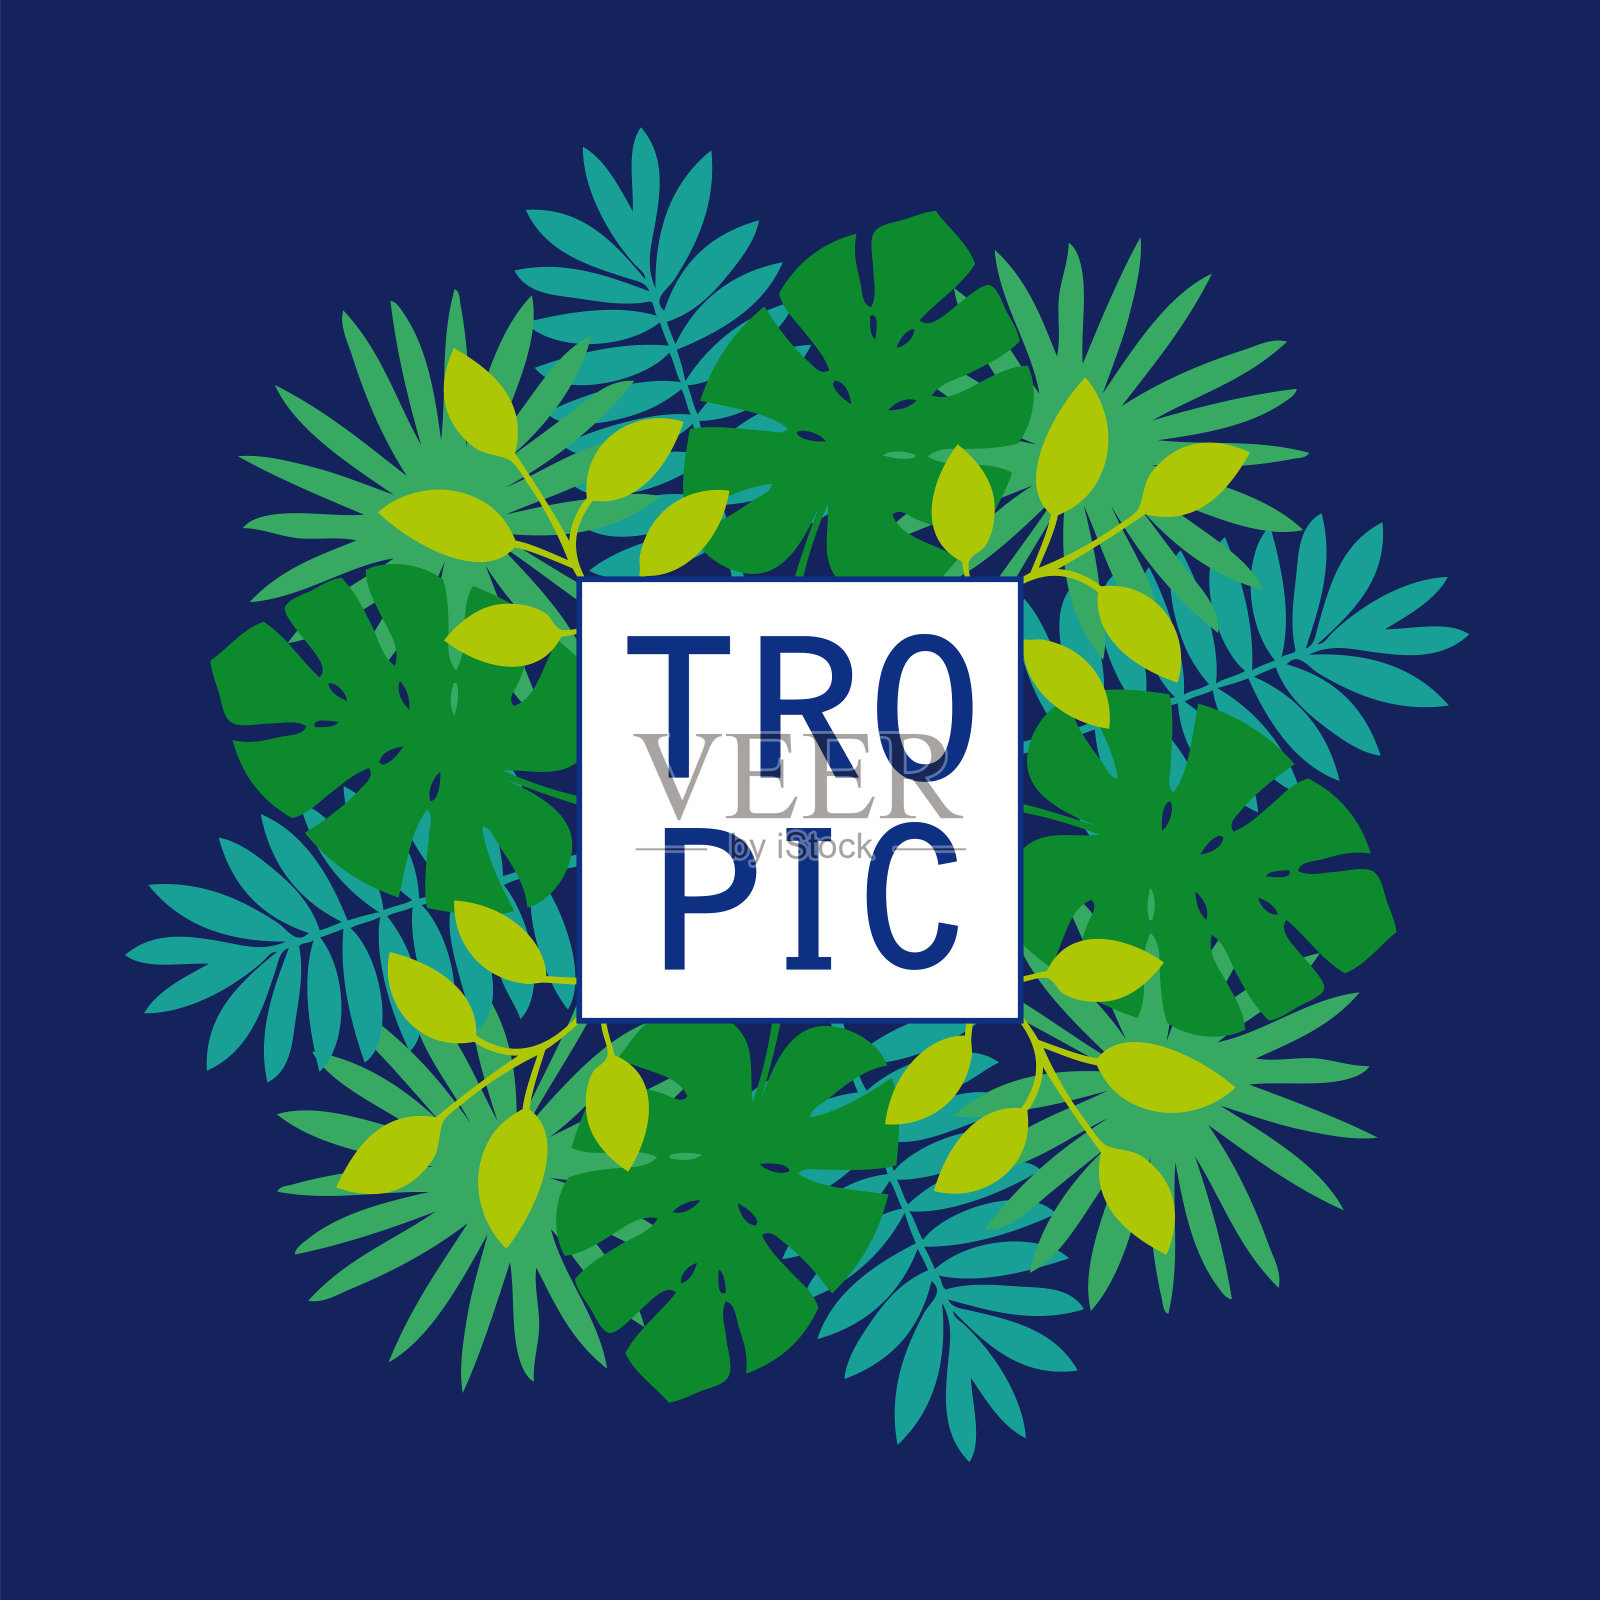 热带怪物和棕榈树的叶子。深蓝色背景的贺卡。插画图片素材